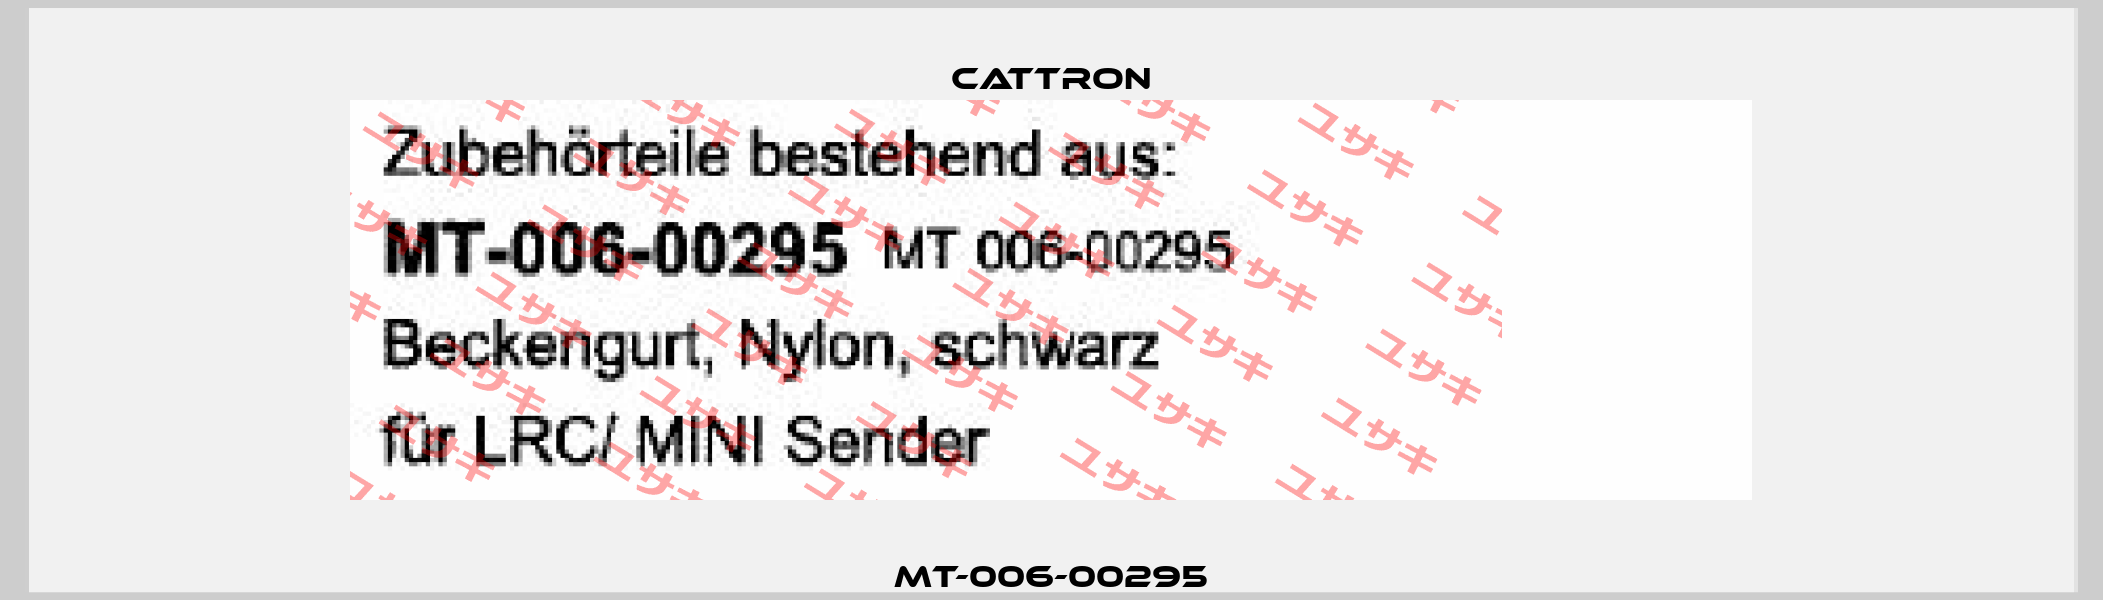 MT-006-00295 Cattron